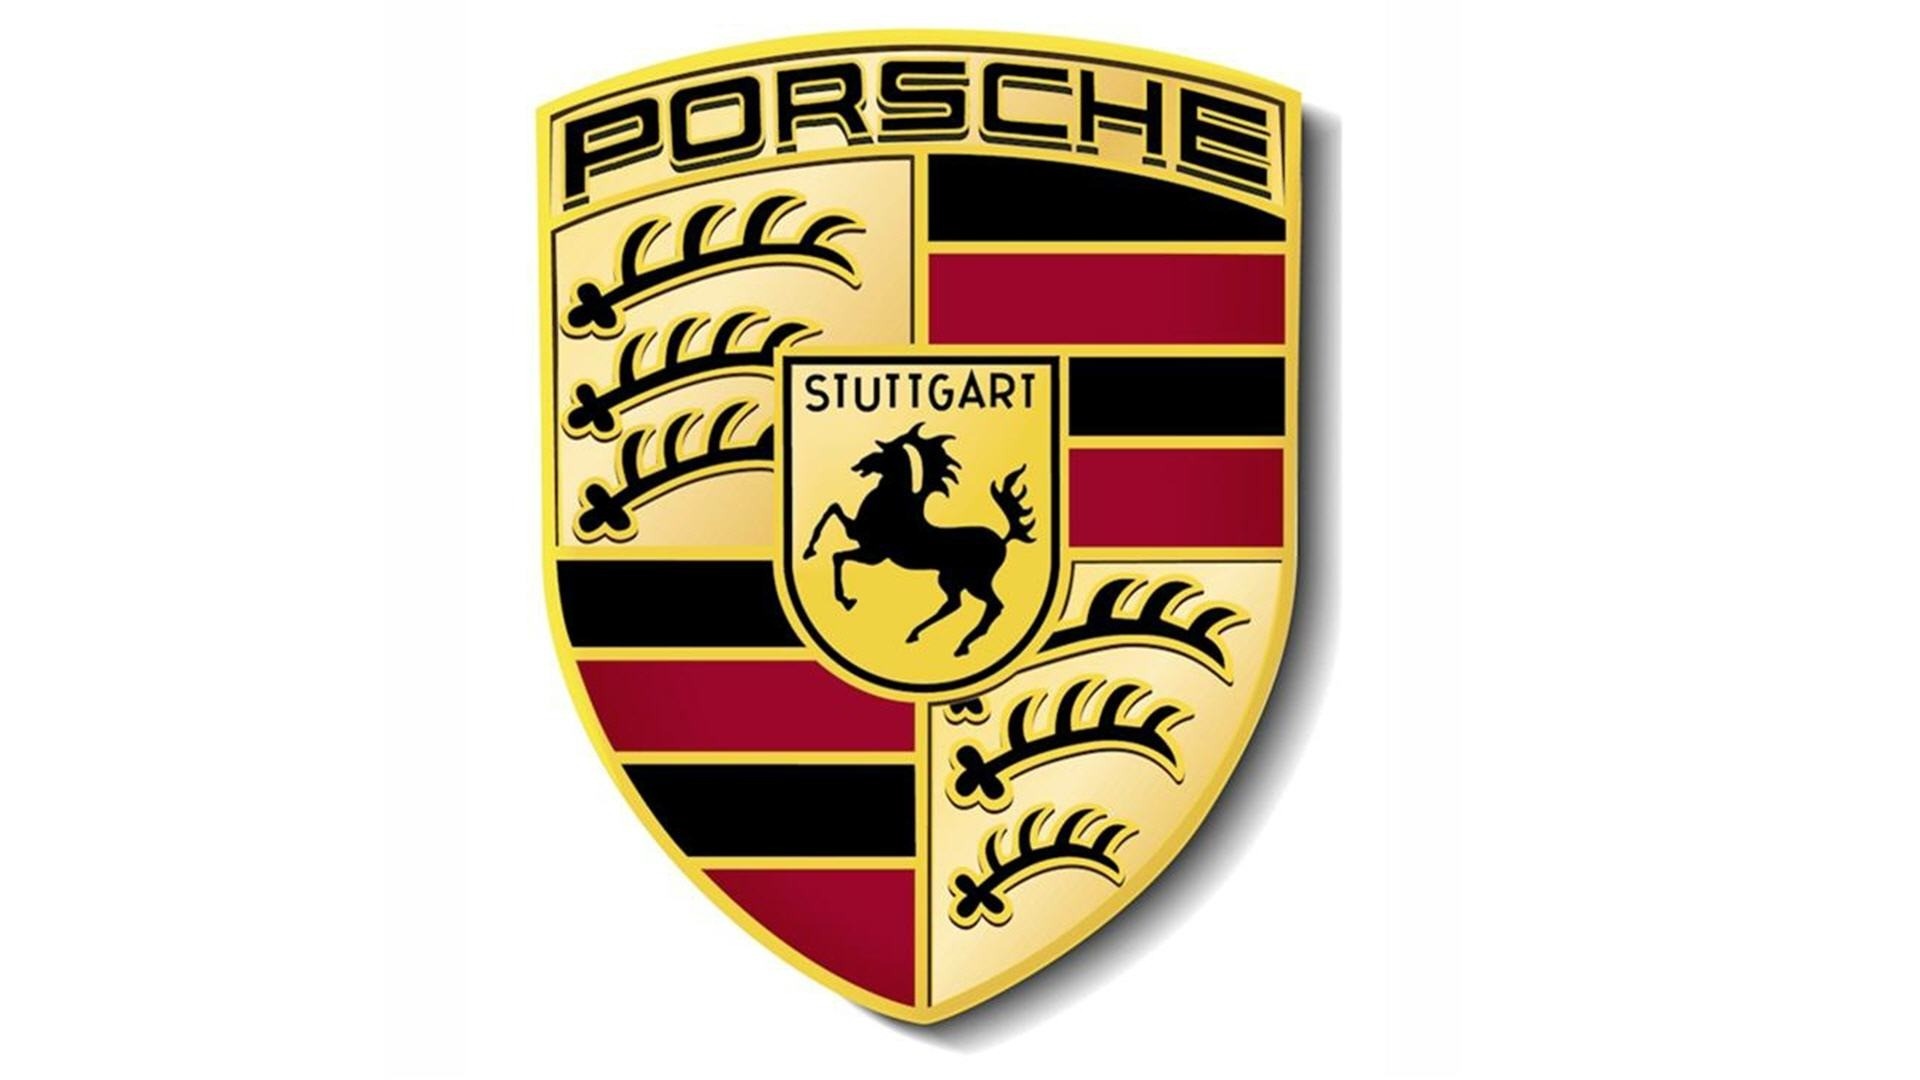 Porsche Logo Wallpaper Widescreen - image #447